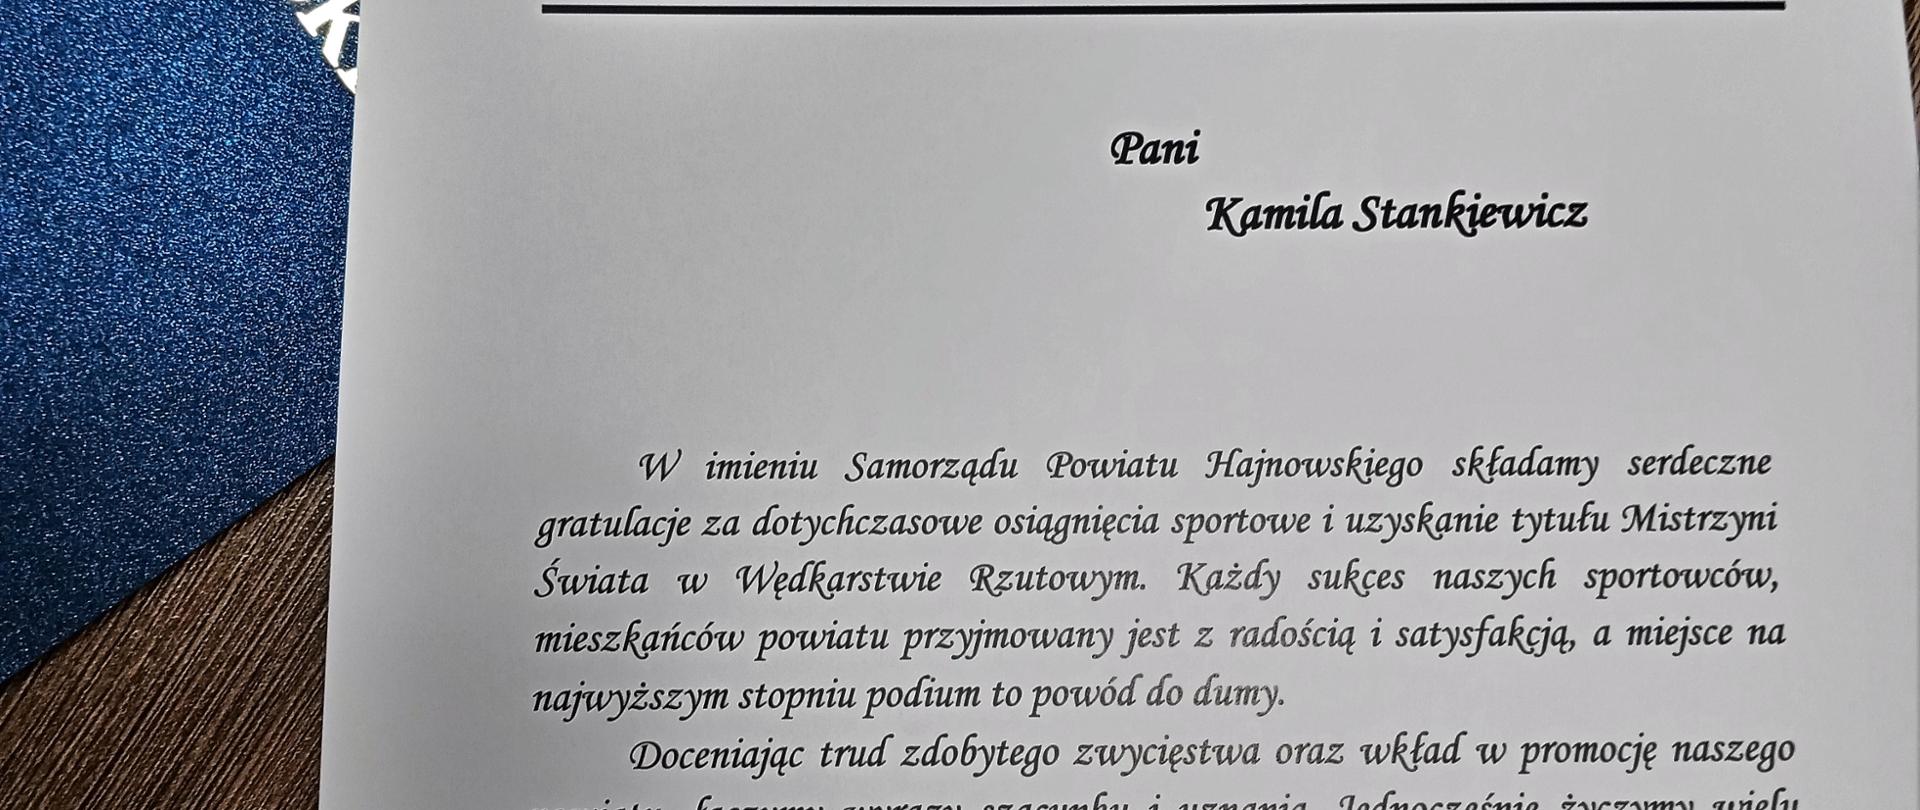 Gratulacje przekazane Kamili, podpisane przez Starostę i Przewodniczącego Rady Powiatu